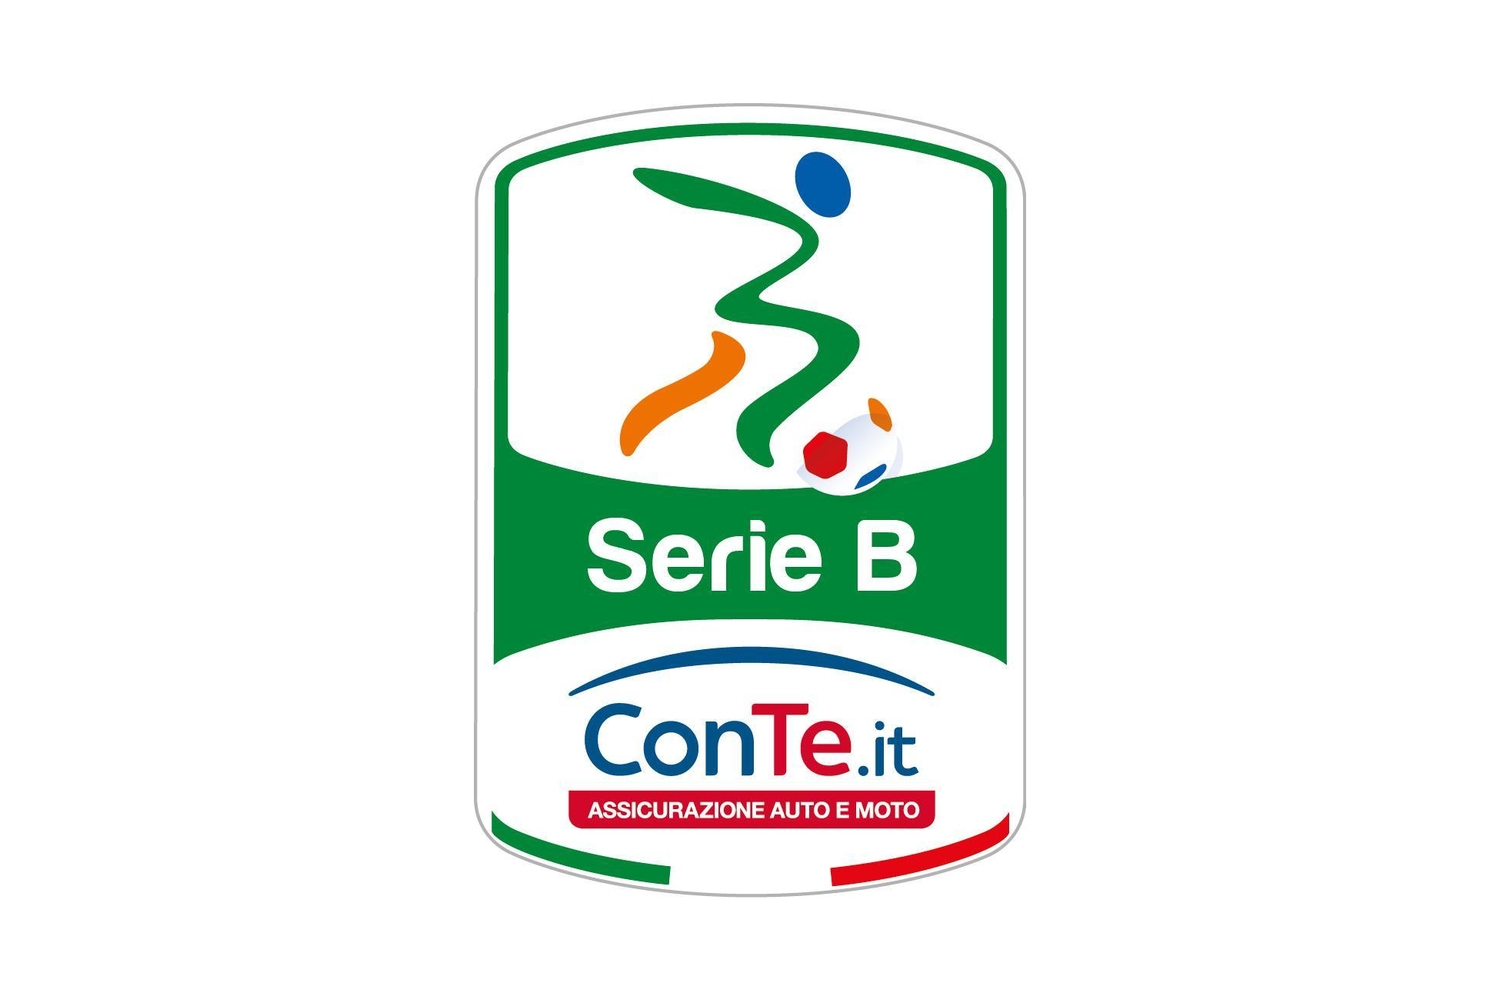 Serie B ConTe.it Imc